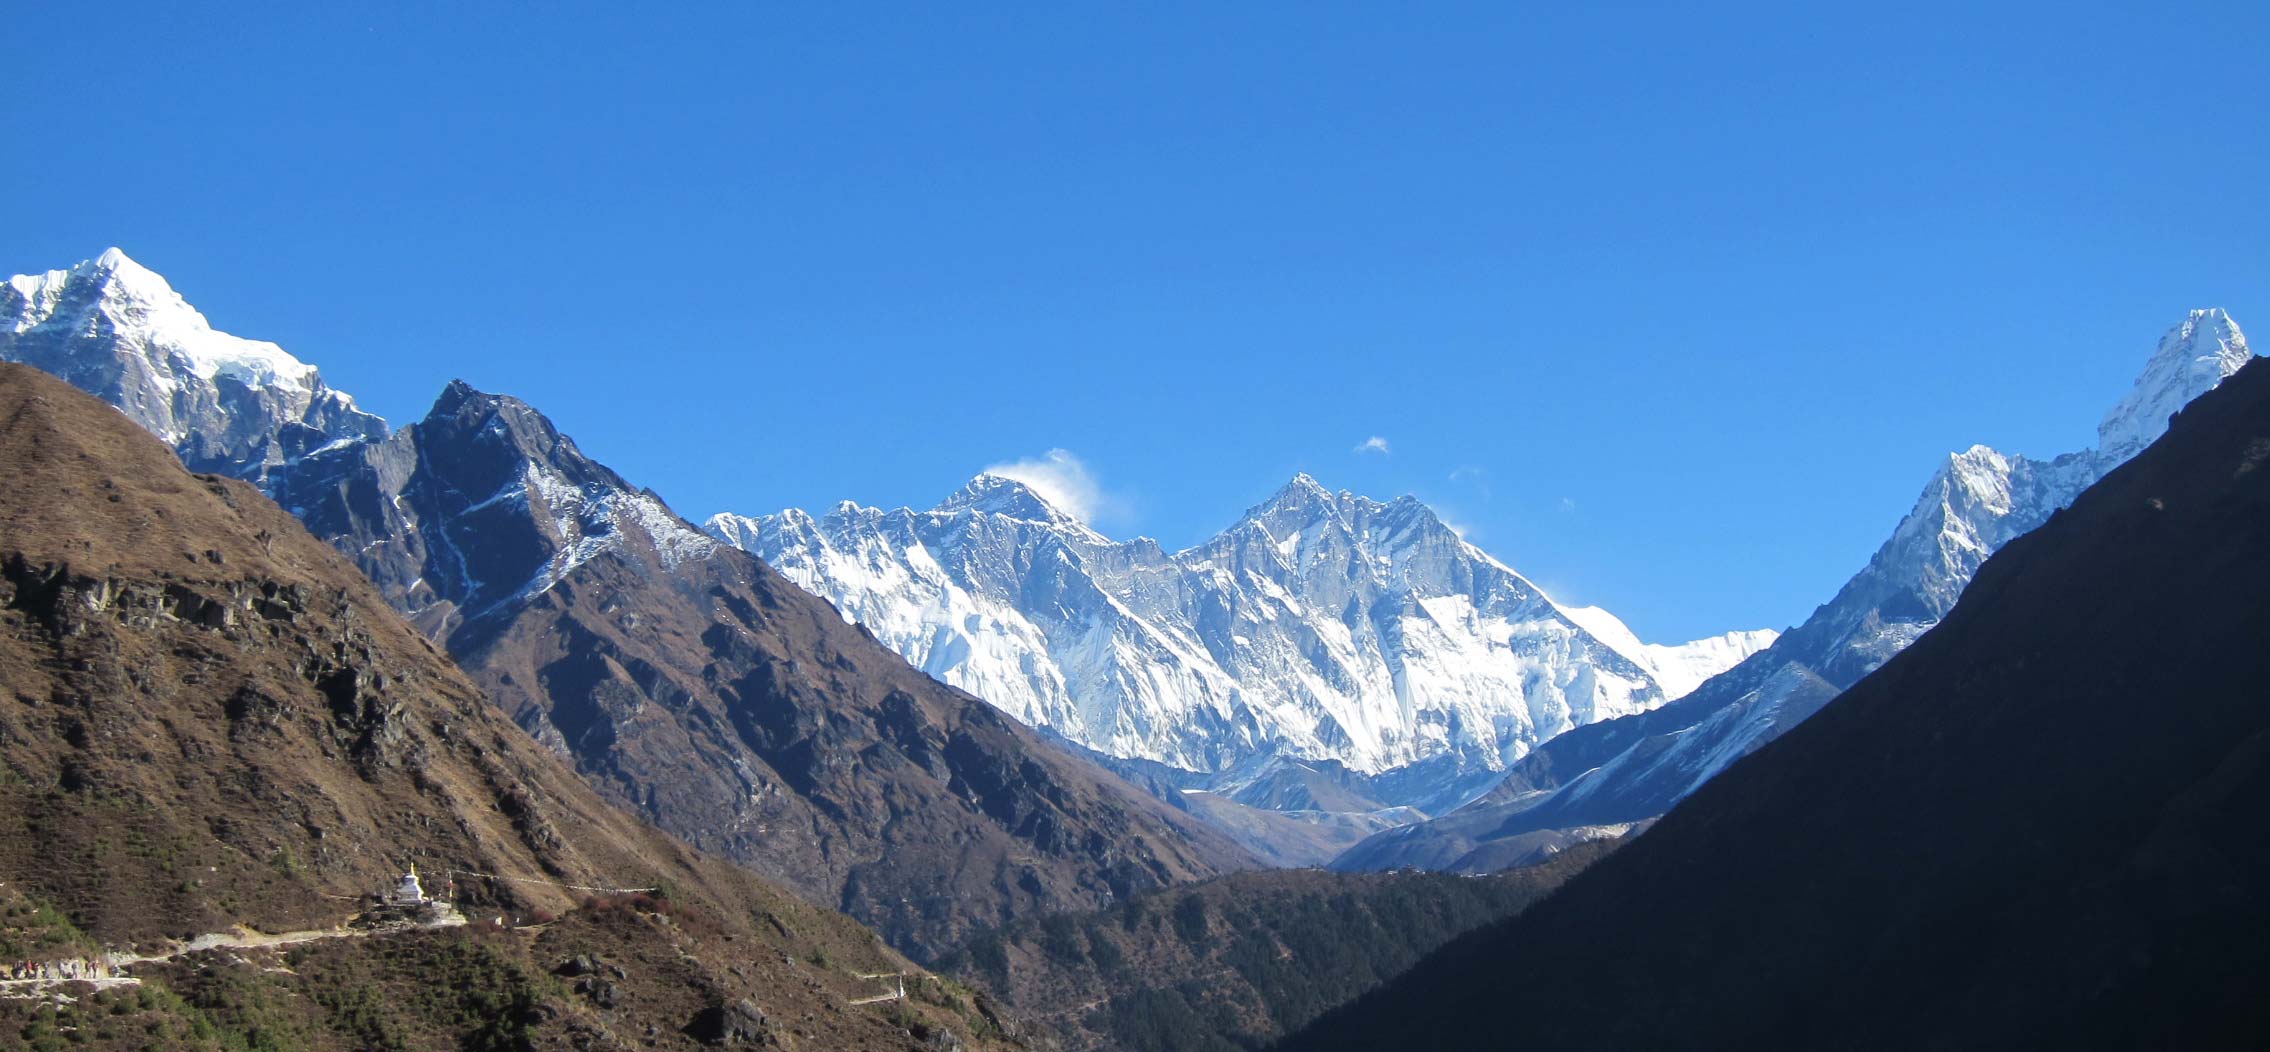 Everest and Amadablam View from top of Nemche Bazaar